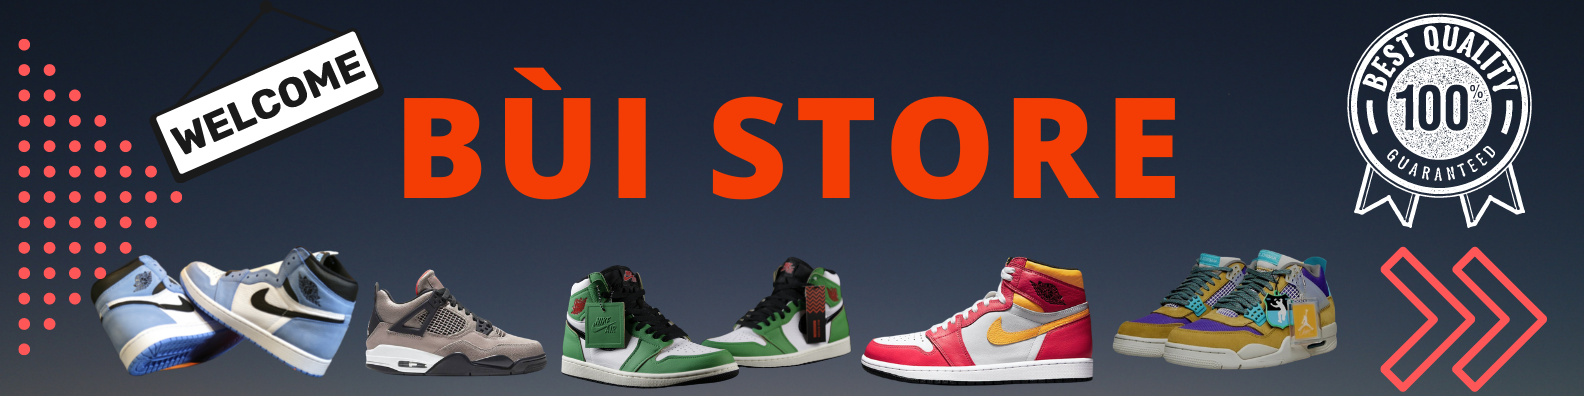 Banner website Bùi Store - Cửa hàng giày sneaker chính hãng tại TP HCM